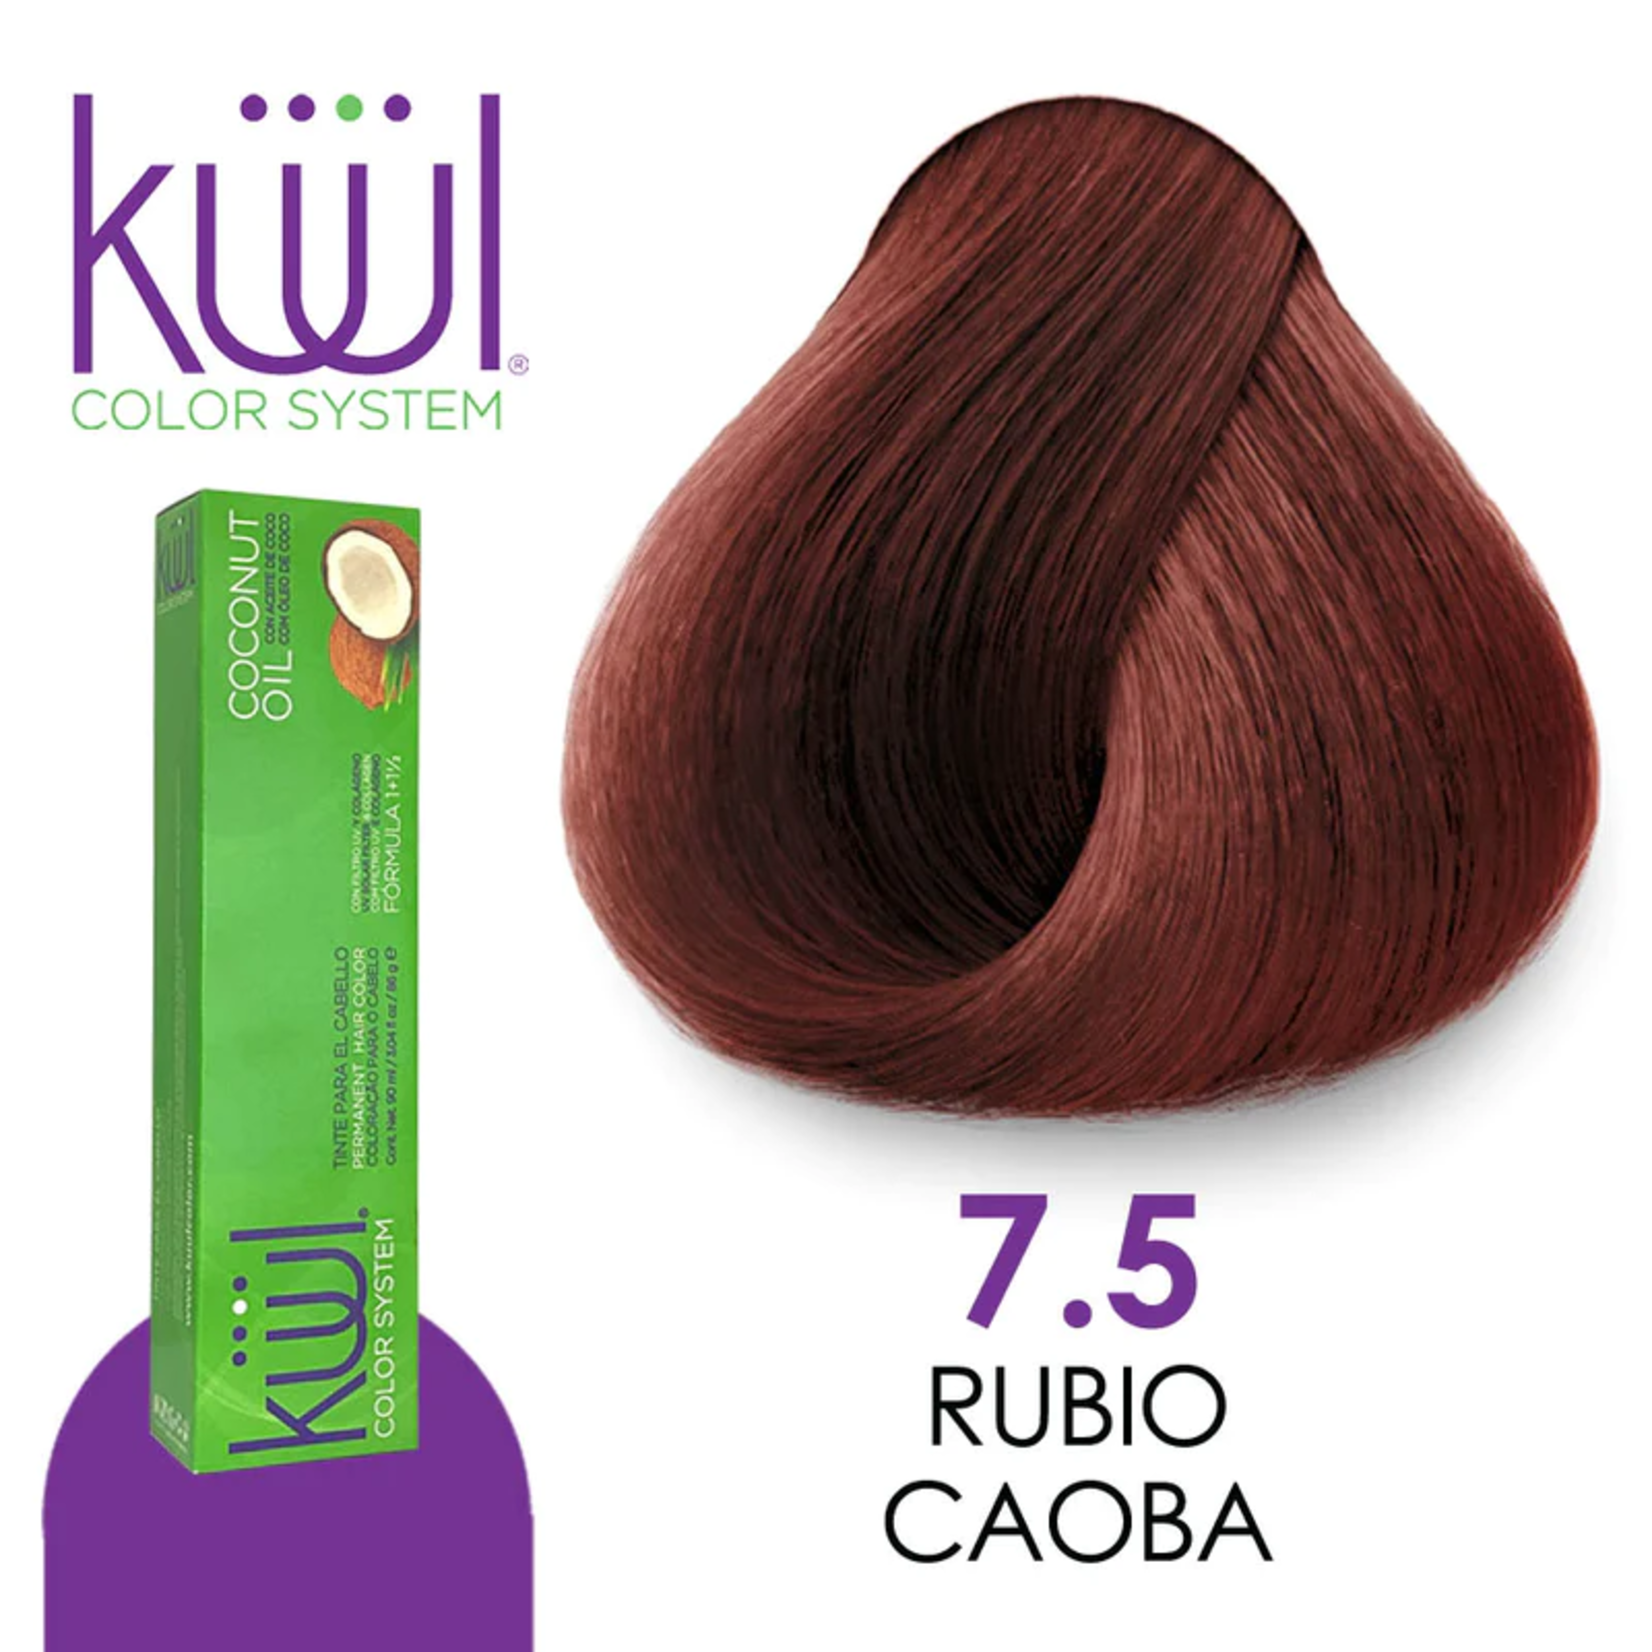 Kuul Tinte para cabello Kuul 7.5 Rubio caoba